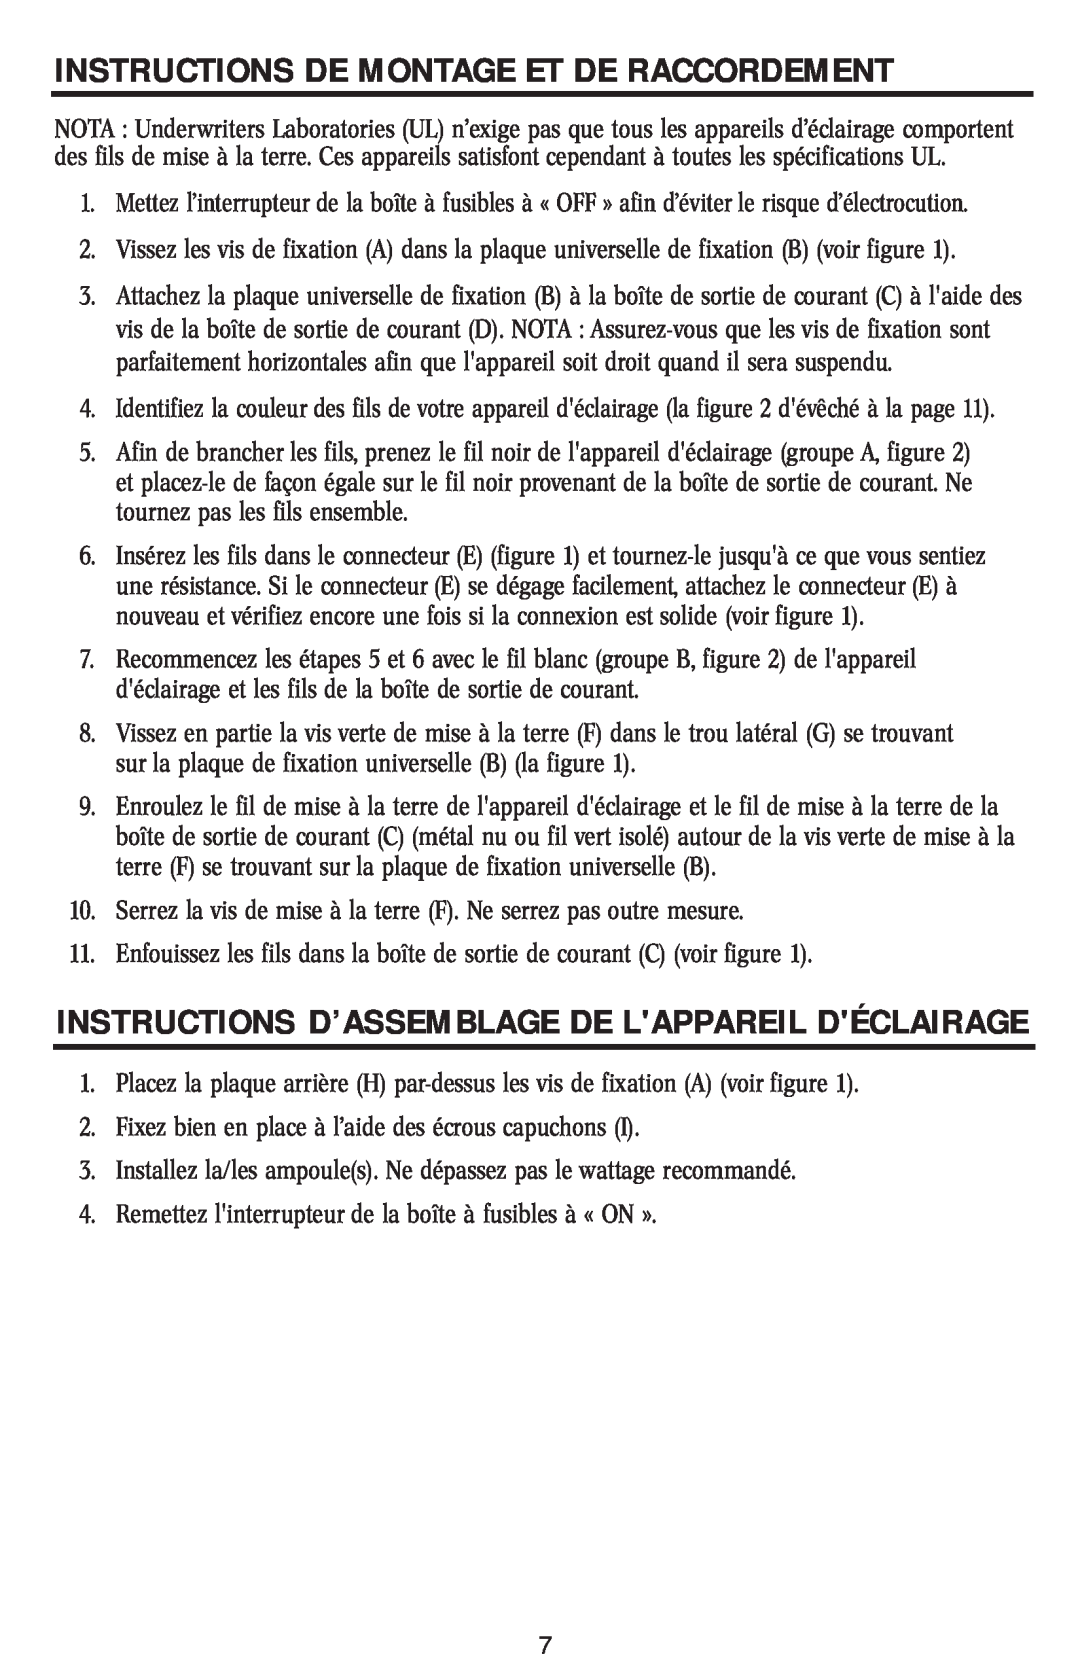 Westinghouse W-019 1/15/04 Instructions D’Assemblage De Lappareil Déclairage, Instructions De Montage Et De Raccordement 